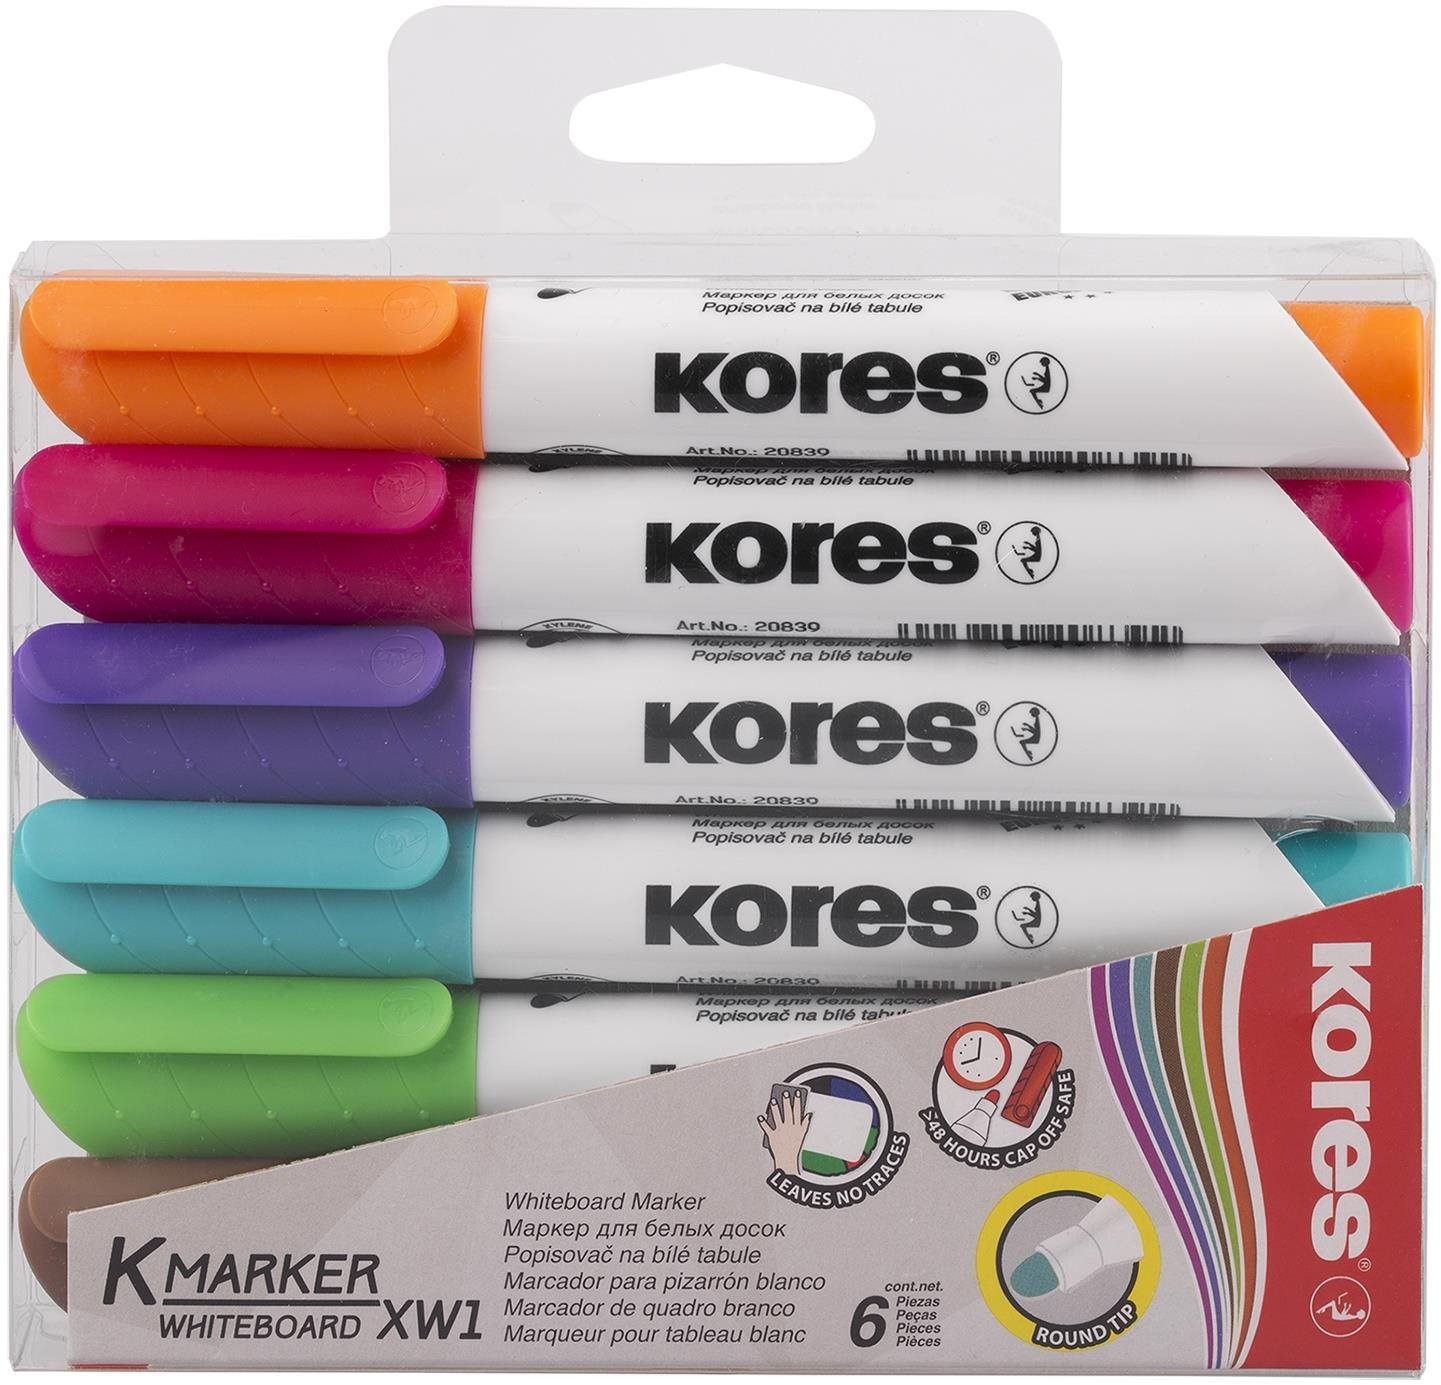 KORES K-MARKER fehér táblához és flipchart táblához - 6 színből álló készlet